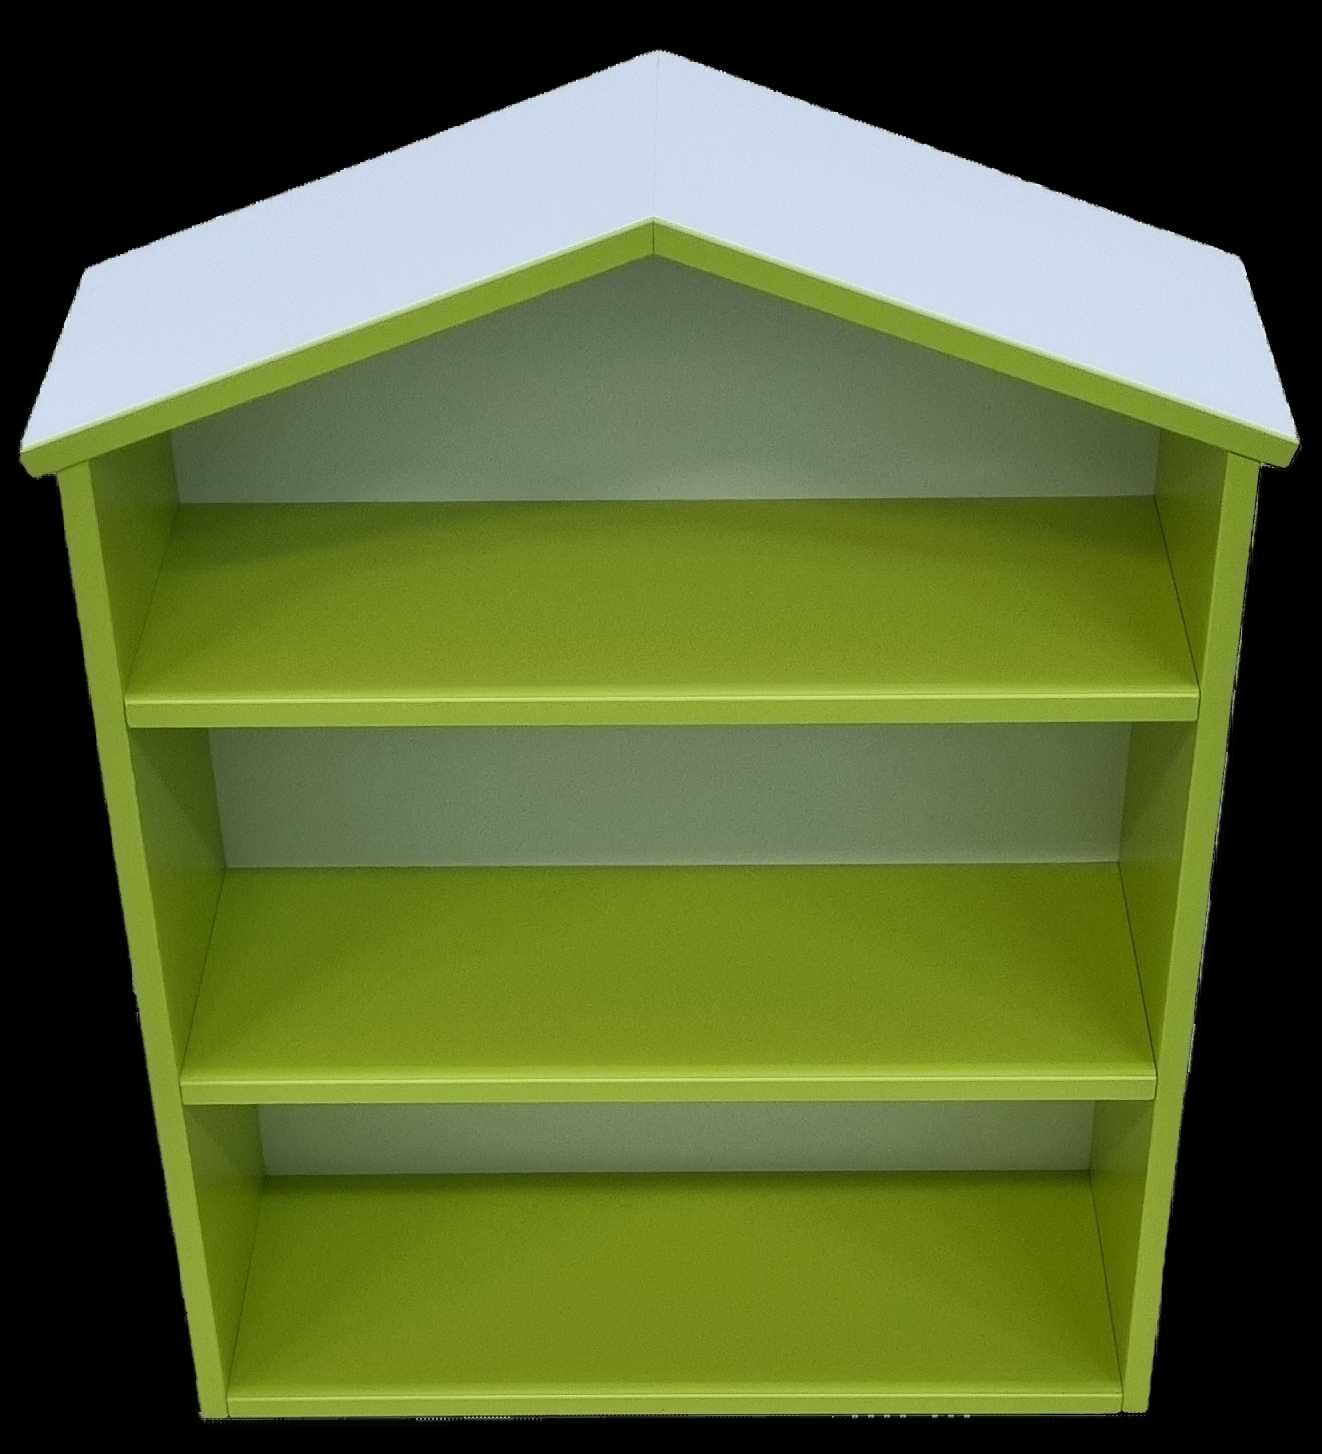 autumn Augment chimney Mini biblioteca pentru carti si jucarii tip casuta, pal verde lime Braila •  OLX.ro